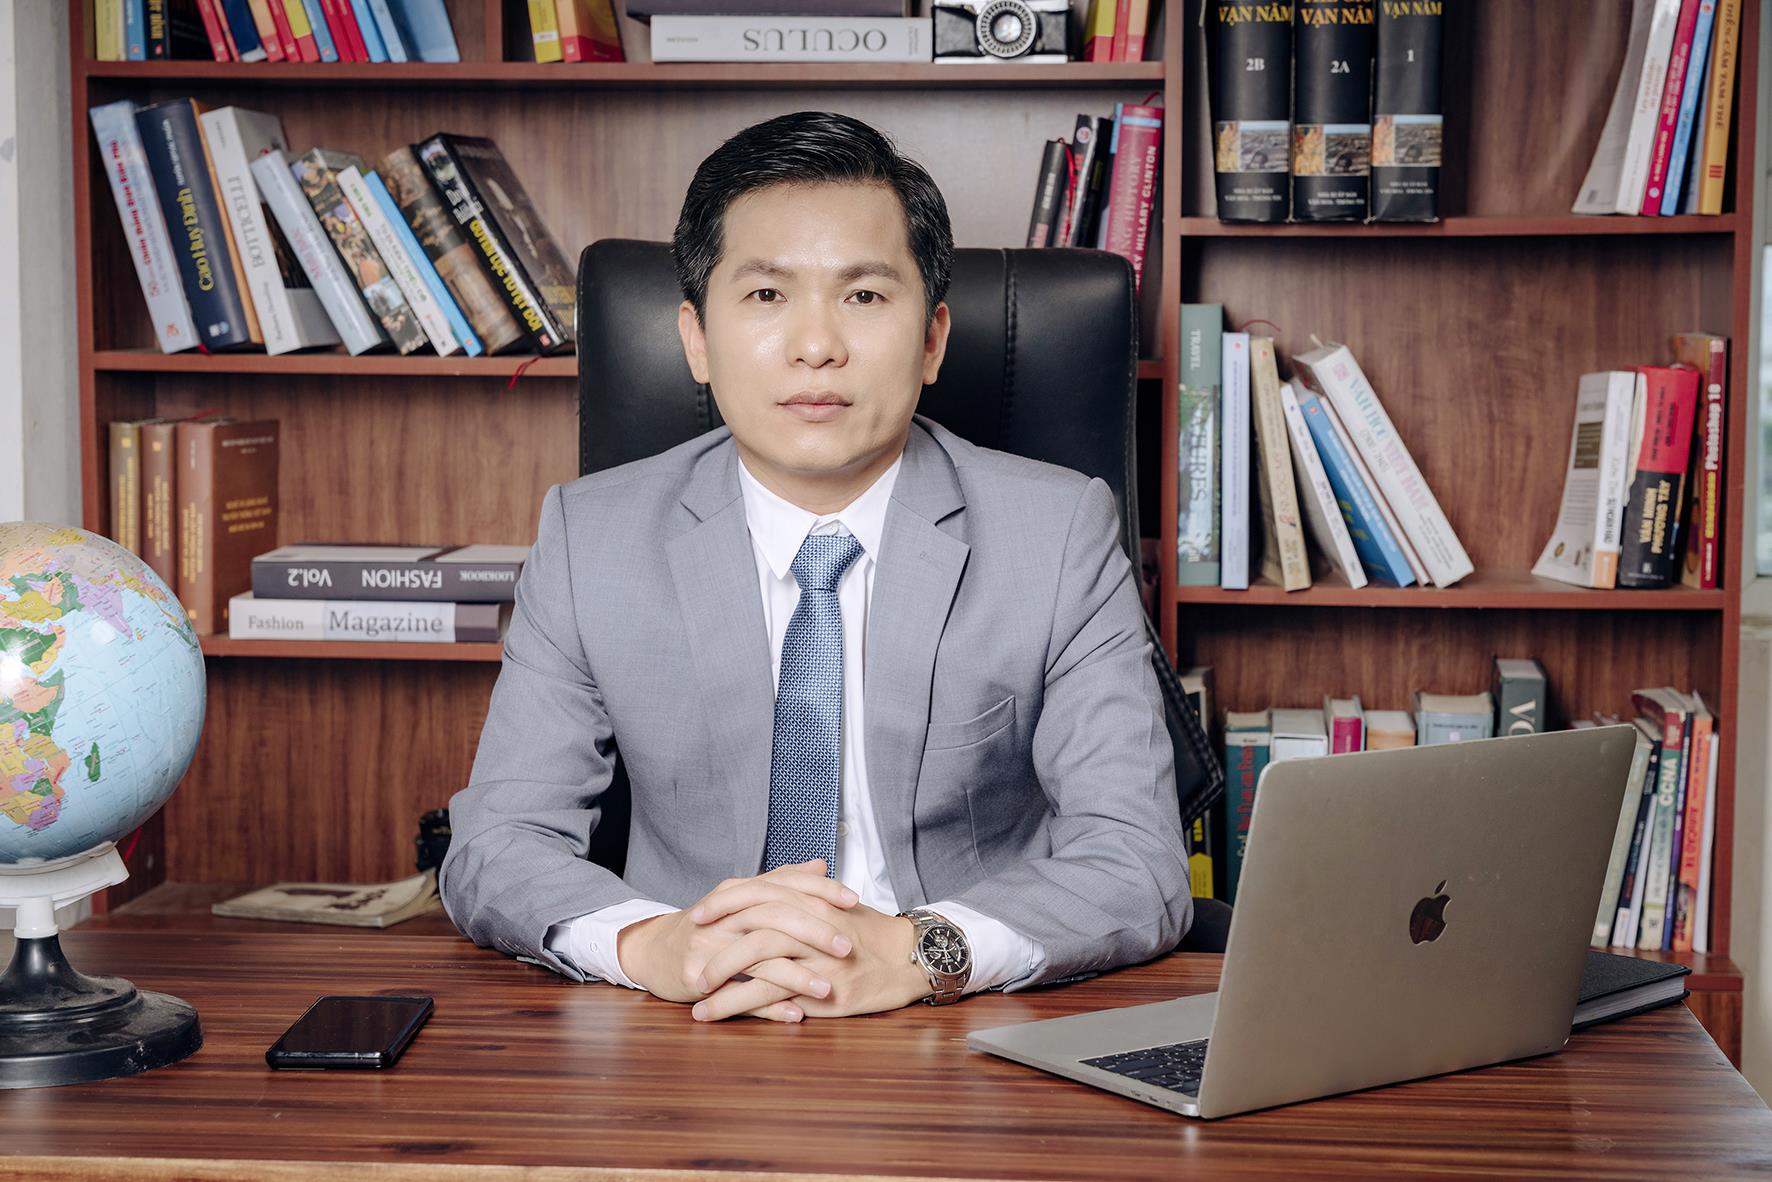 CEO Hoàng Hữu Thắng - Chủ tịch HĐQT Công ty Cổ phần Tập đoàn Kỹ thuật và Công nghiệp Việt Nam (Intech Group): Doanh nhân truyền cảm hứng cho thế hệ trẻ